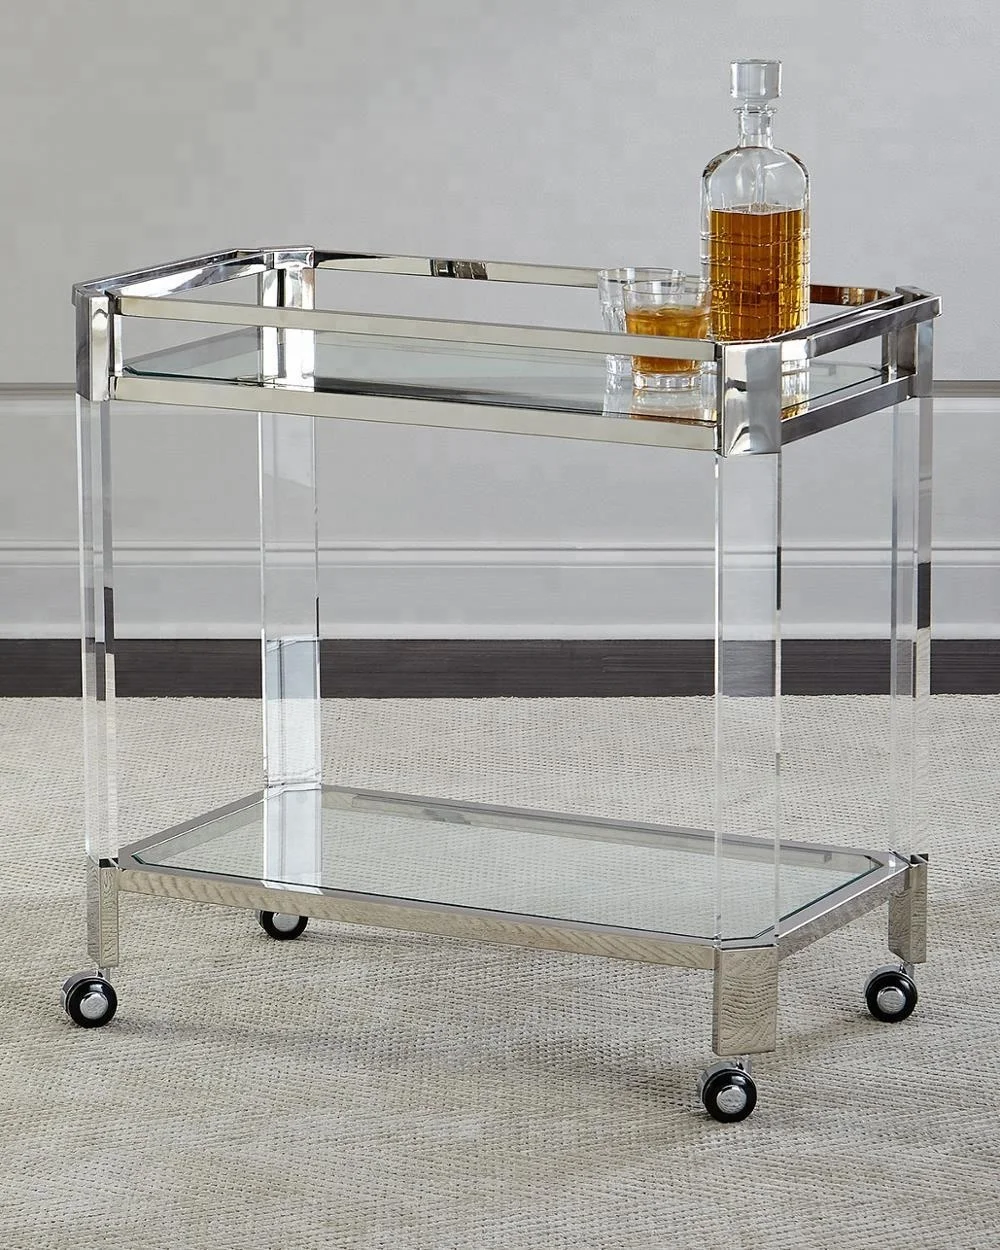 
Hot sale custom clear acrylic bar cart  (60772320643)